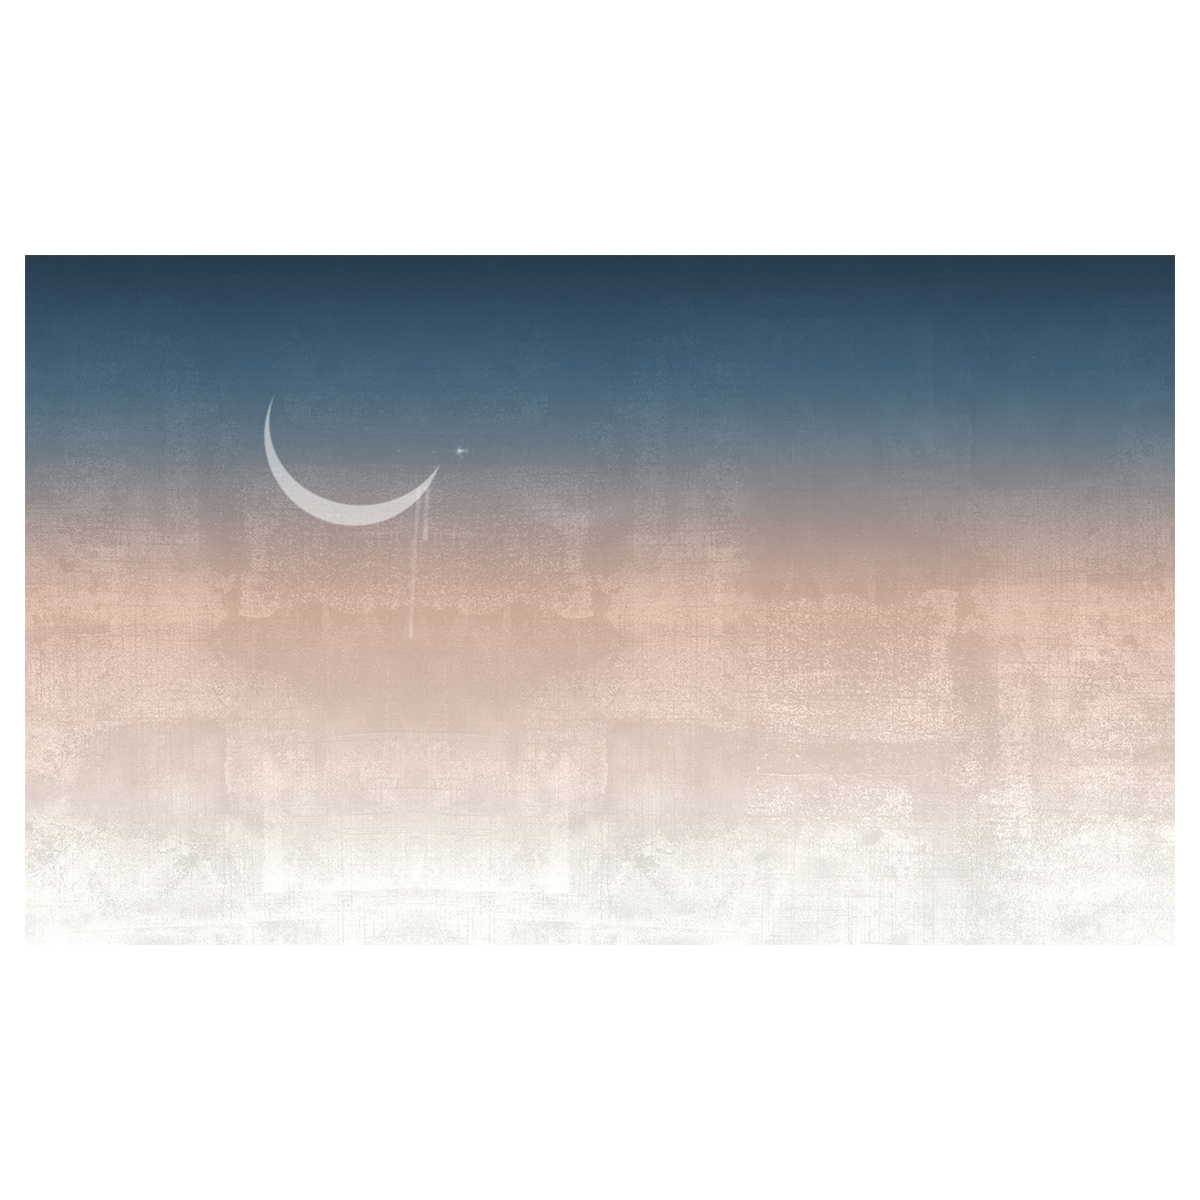 Rivestimento per pareti Moonlight, carta vinilica TNT by Officinarkitettura